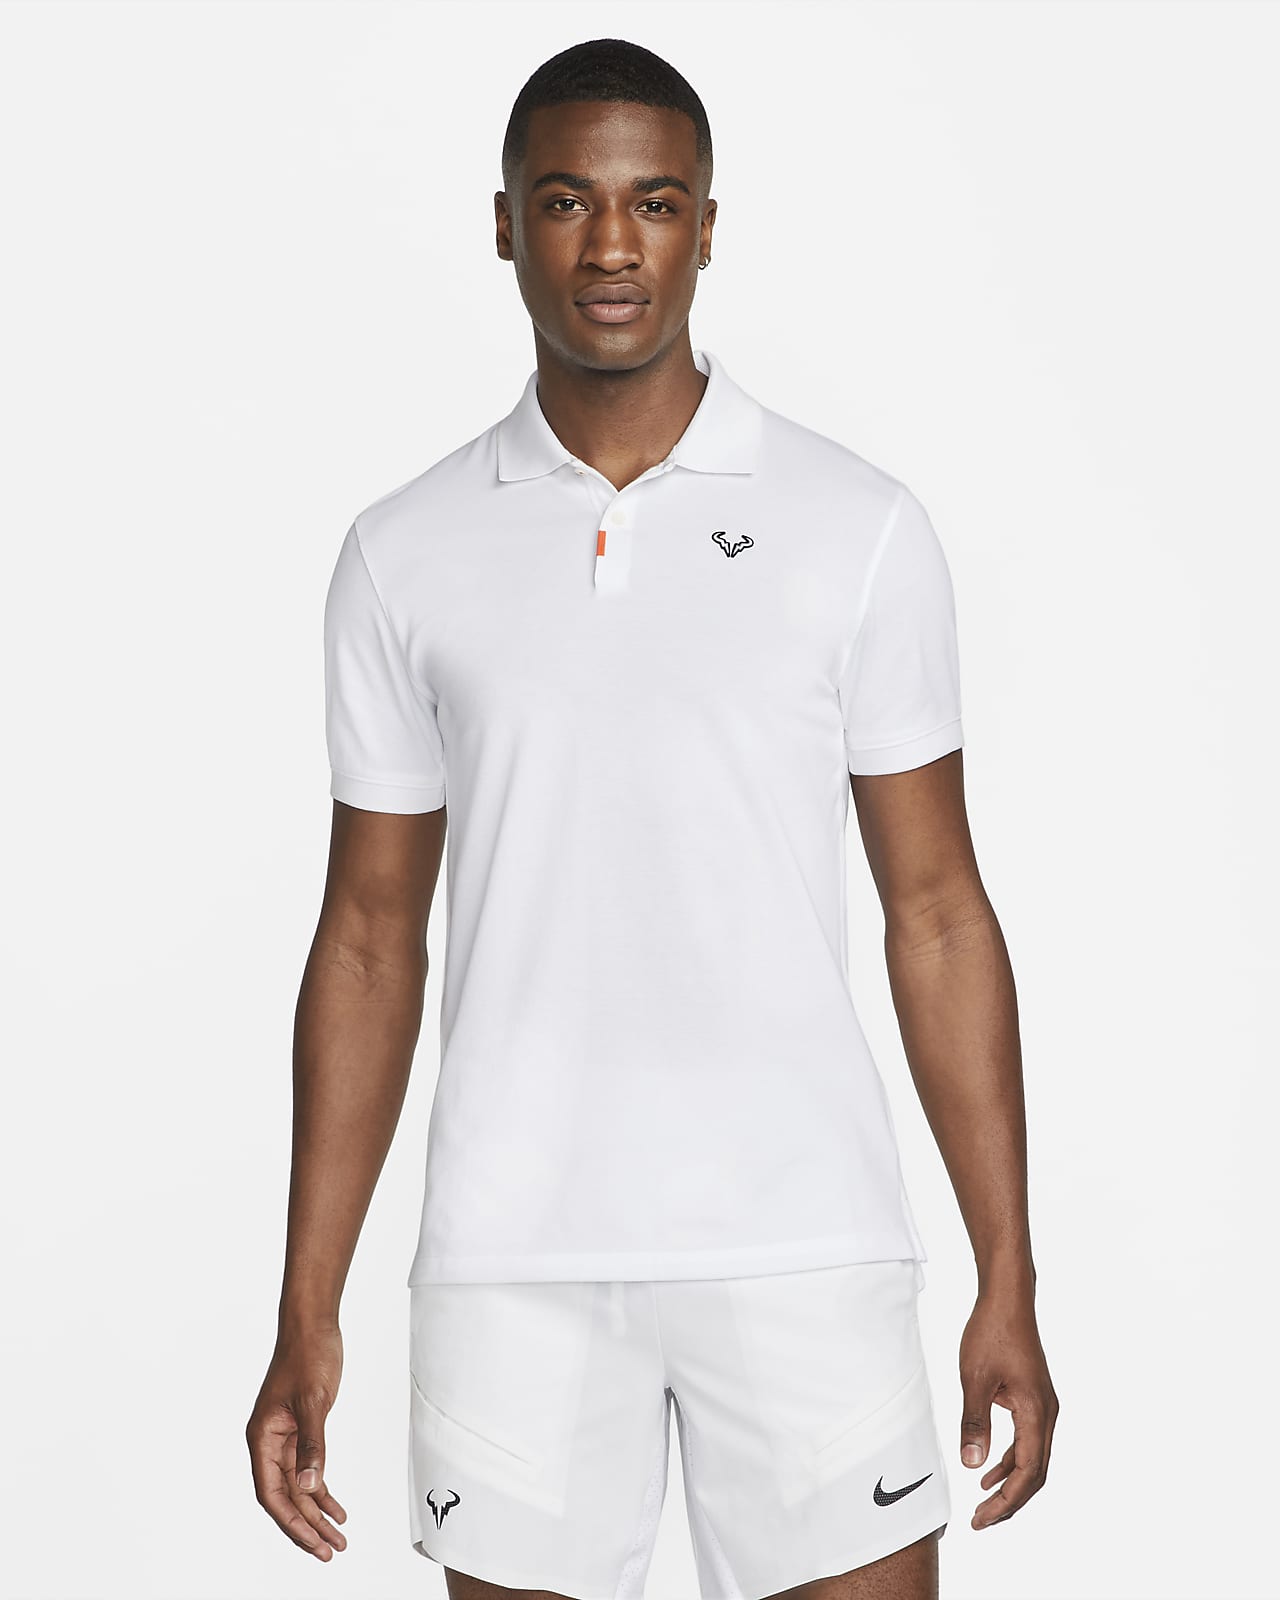 Ανδρική μπλούζα πόλο με στενή εφαρμογή The Nike Polo Rafa